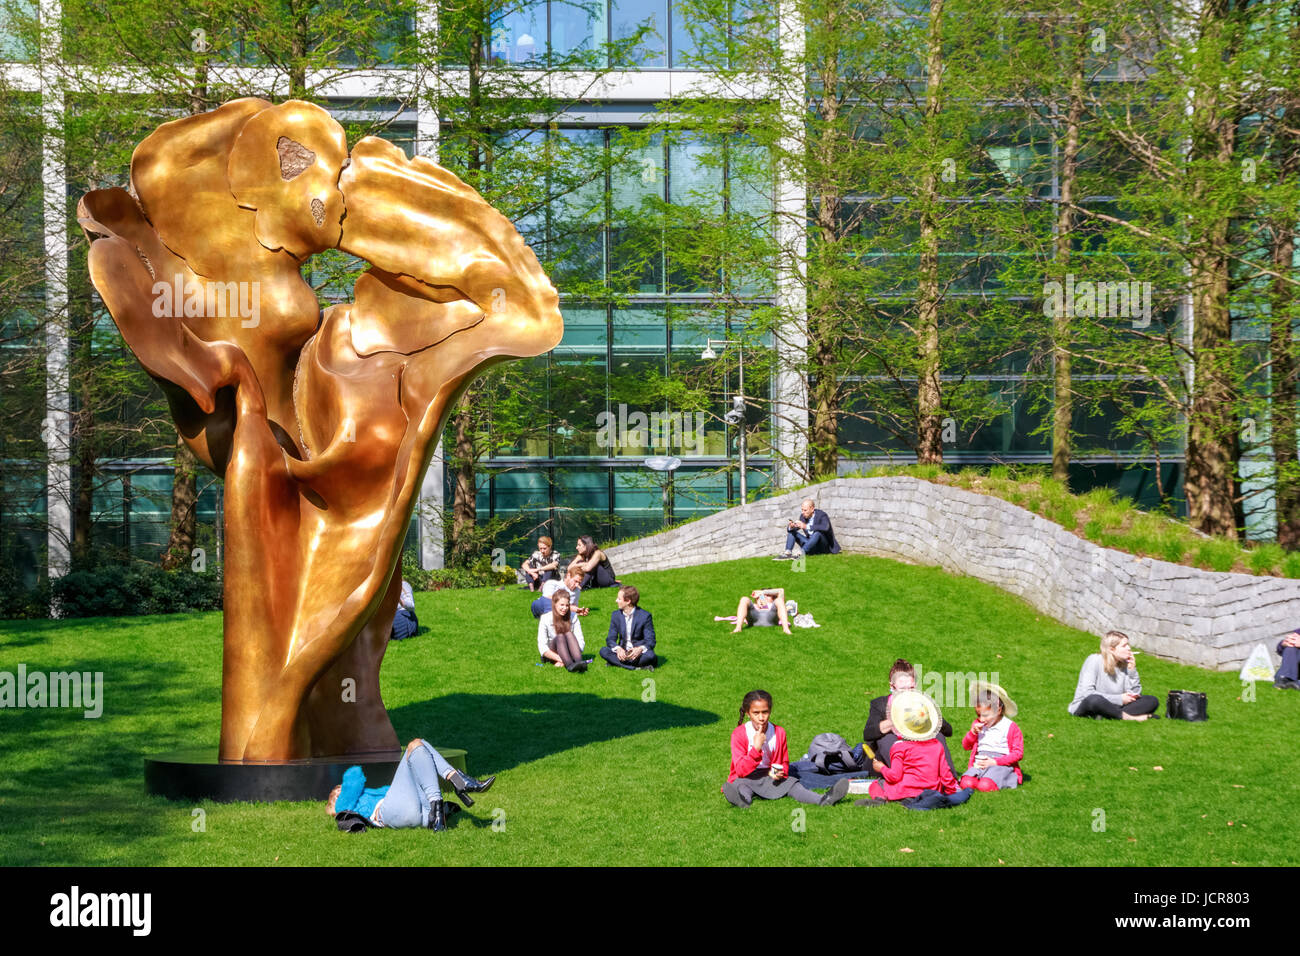 Londres, Royaume-Uni - 10 mai 2017 - Fortuna, une sculpture en bronze de Helaine Blumenfeld dans Jubilee Park, Canary Wharf, où les gens sont assis et reposant sur Banque D'Images